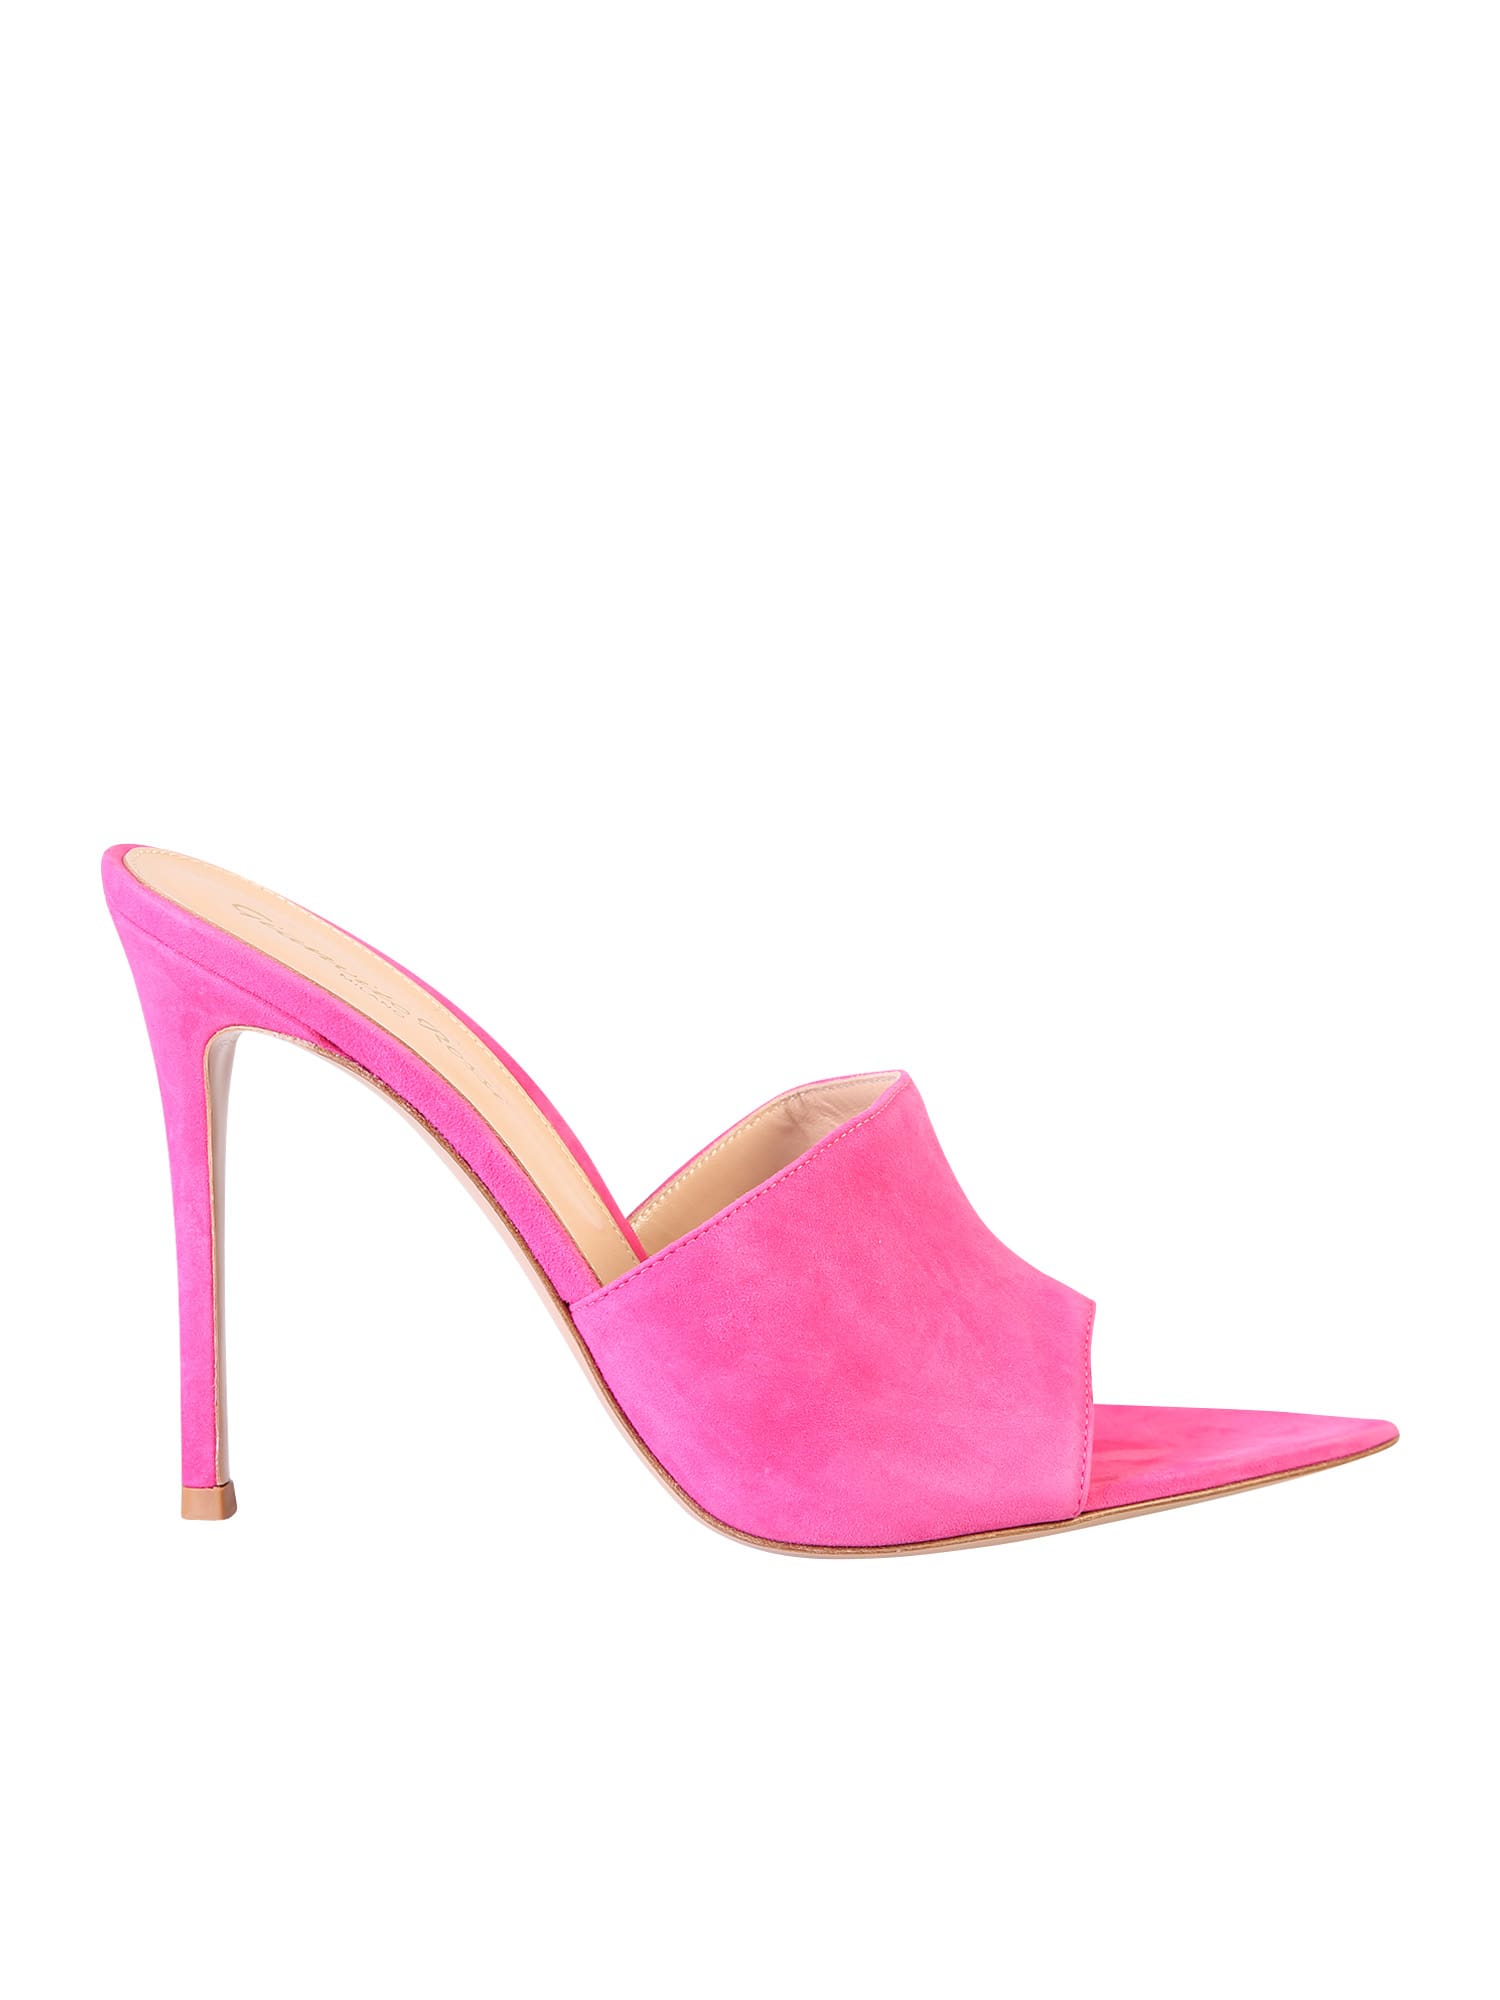 Gianvito Rossi High Heel Sandals In Pink